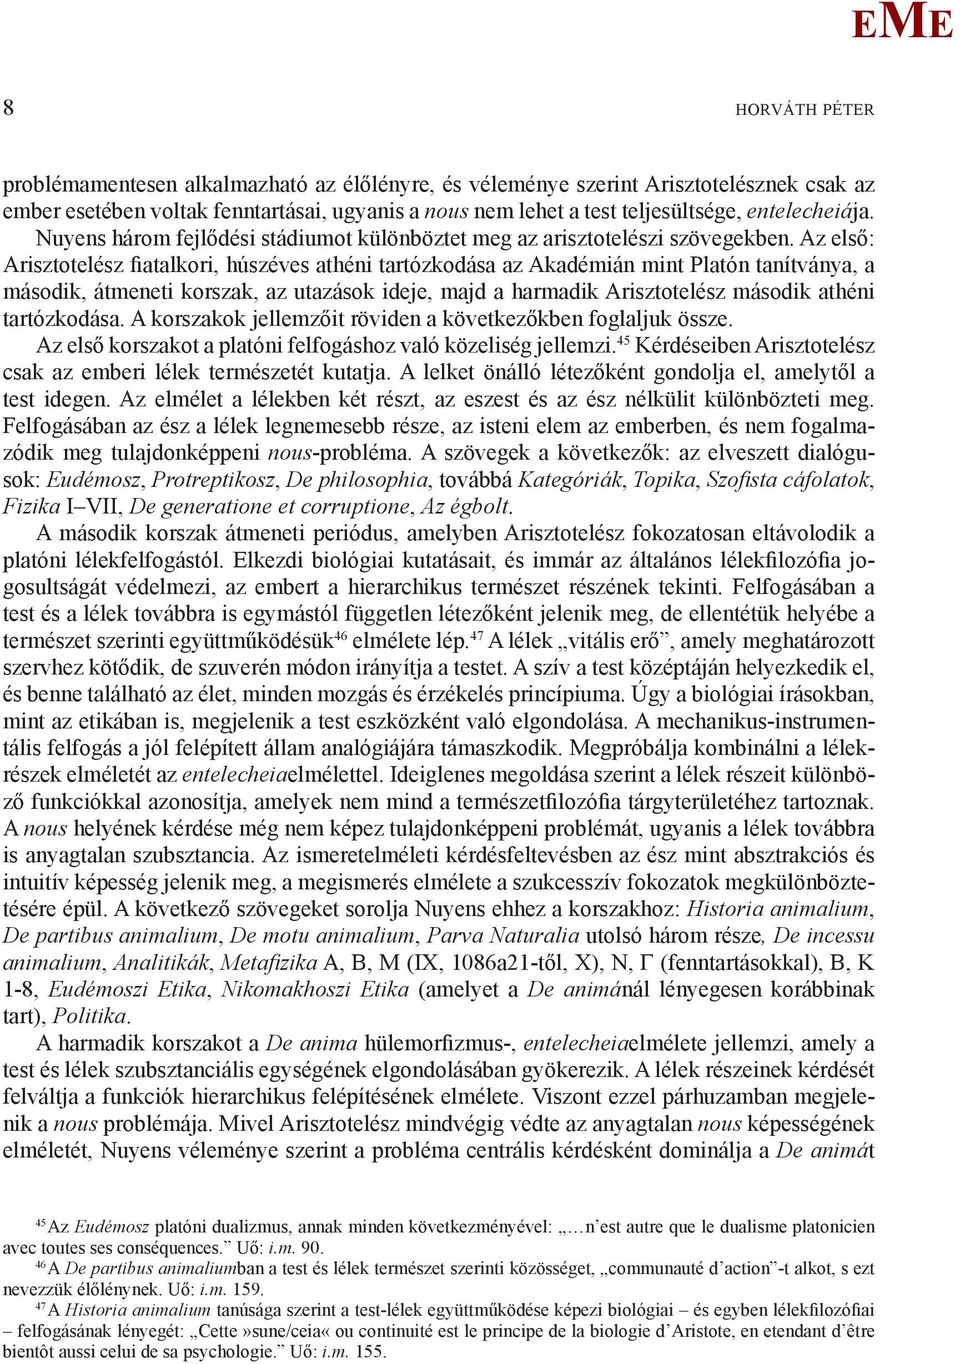 A lélekfilozófia értelmezési perspektívái a 20. századi Arisztotelész-irodalomban  - PDF Ingyenes letöltés